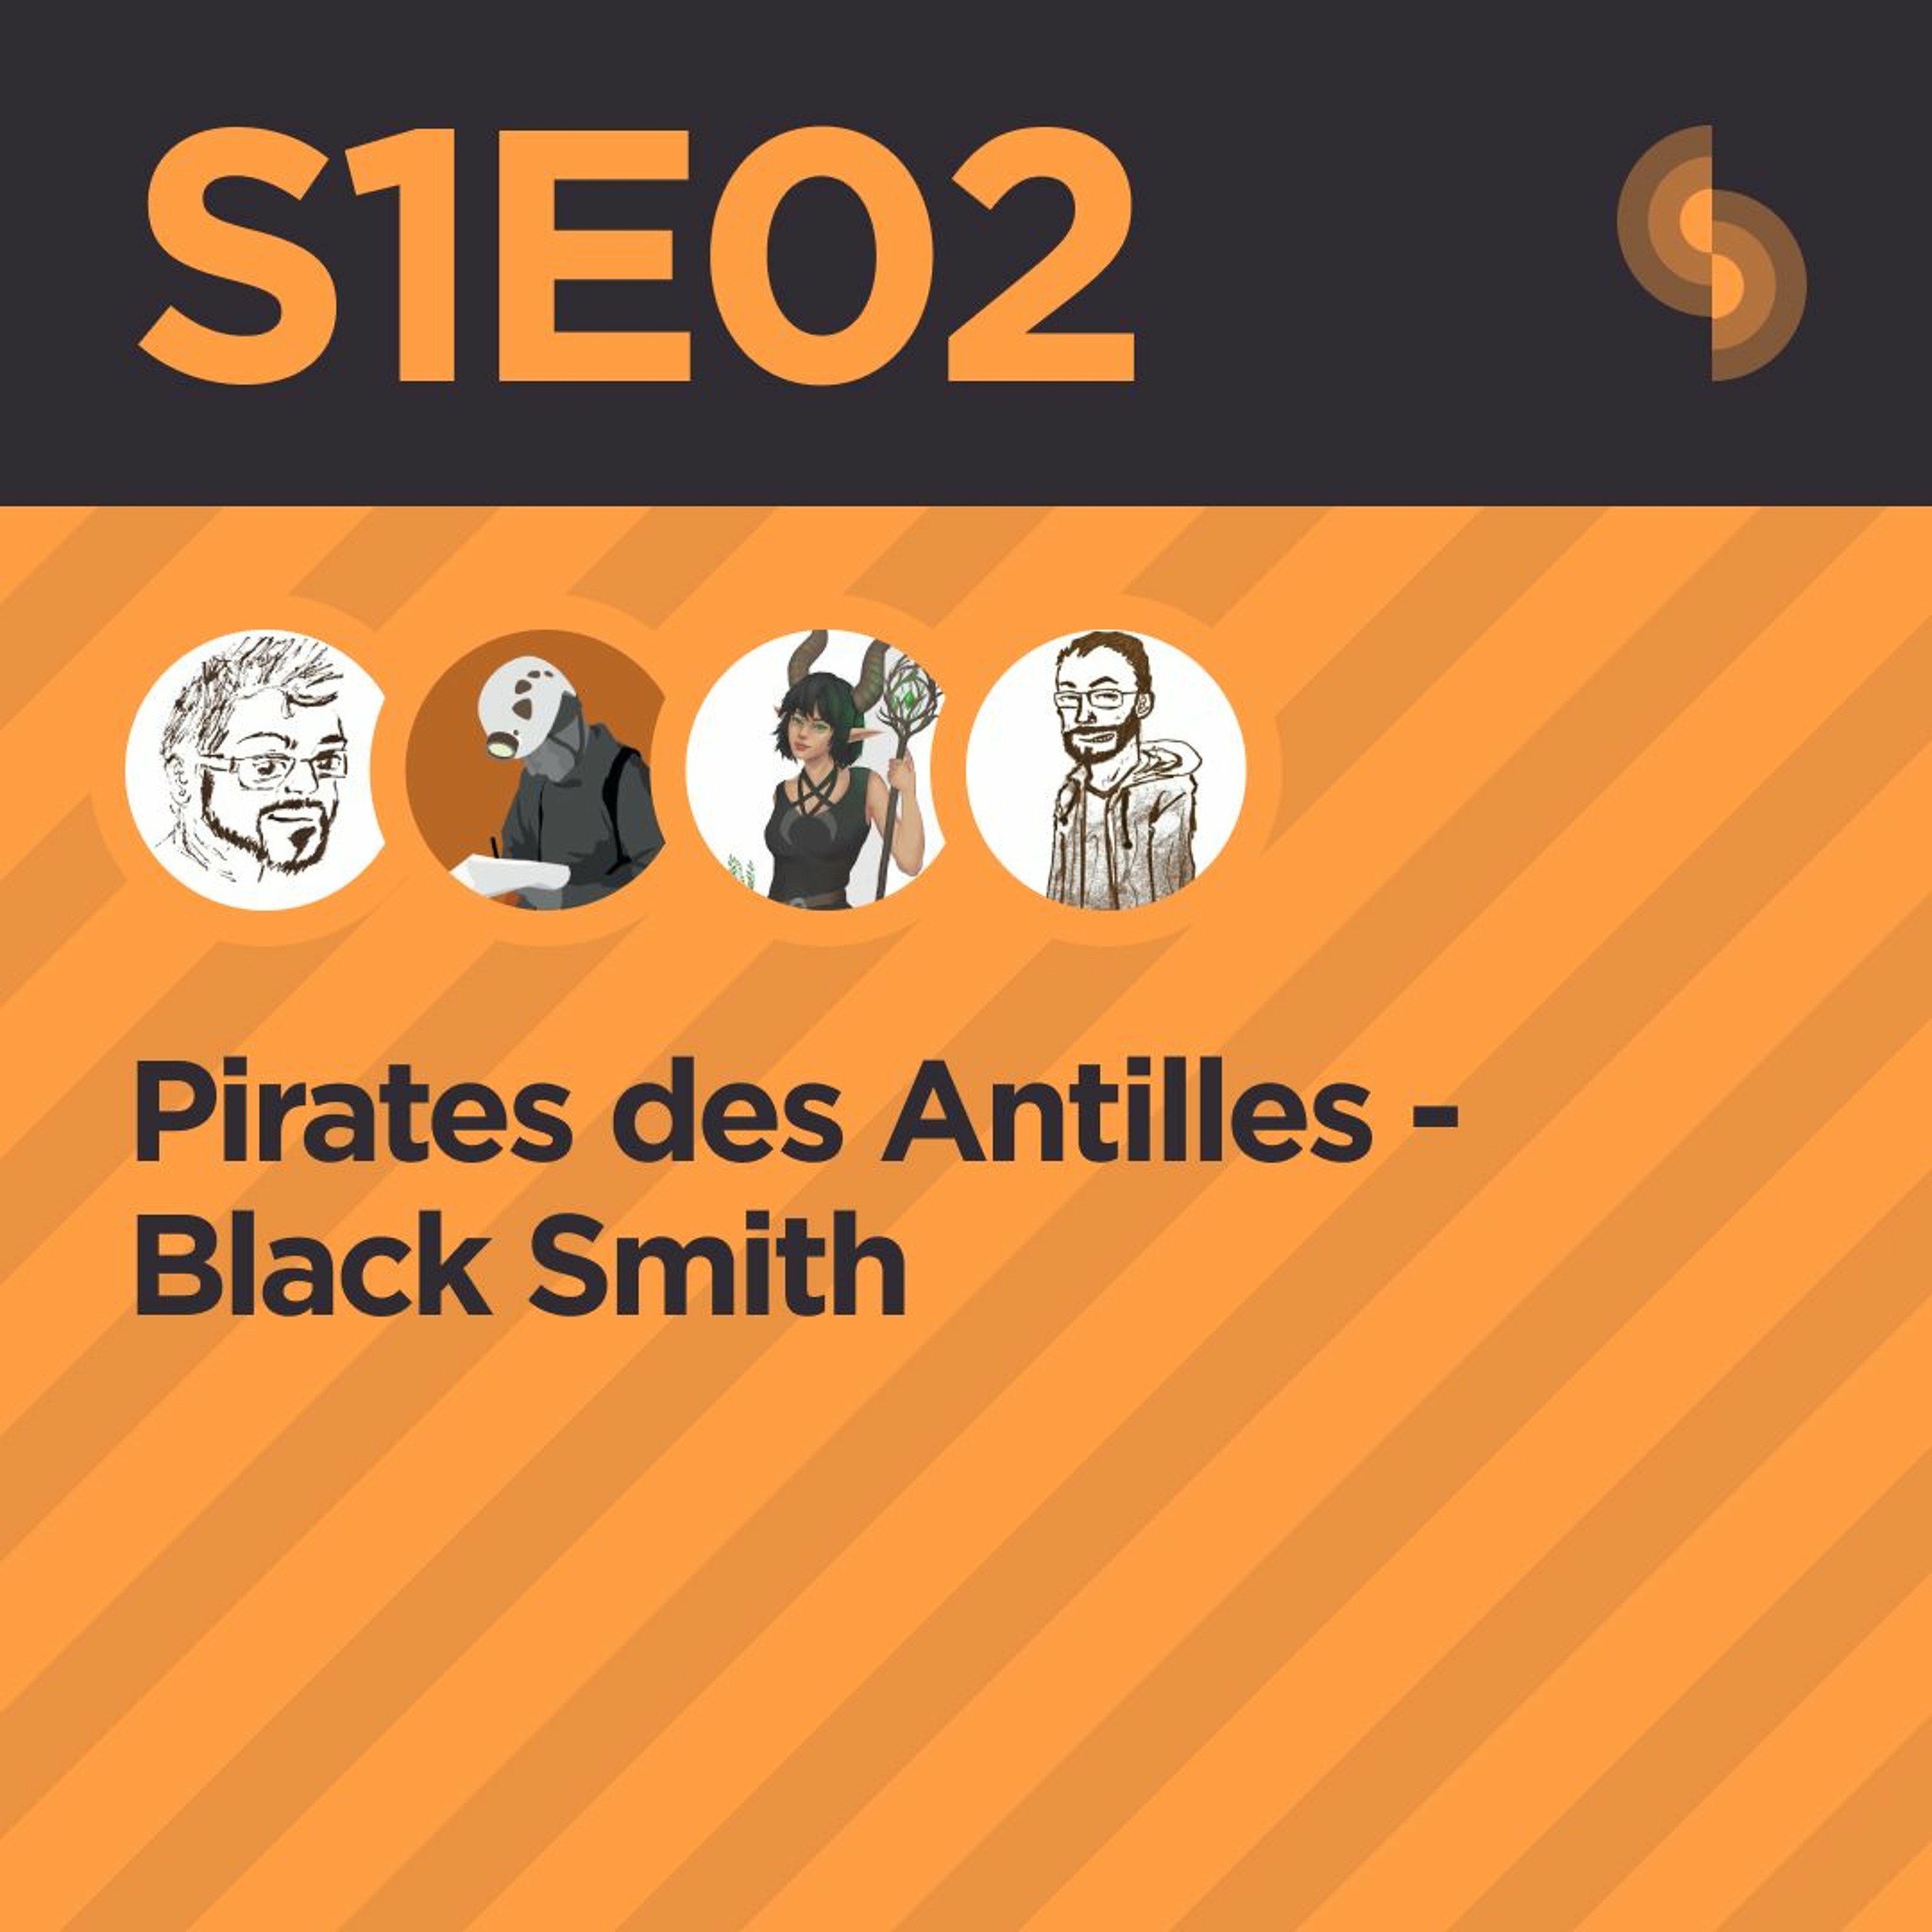 Pirates des Antilles S1E02 (Black Smith)